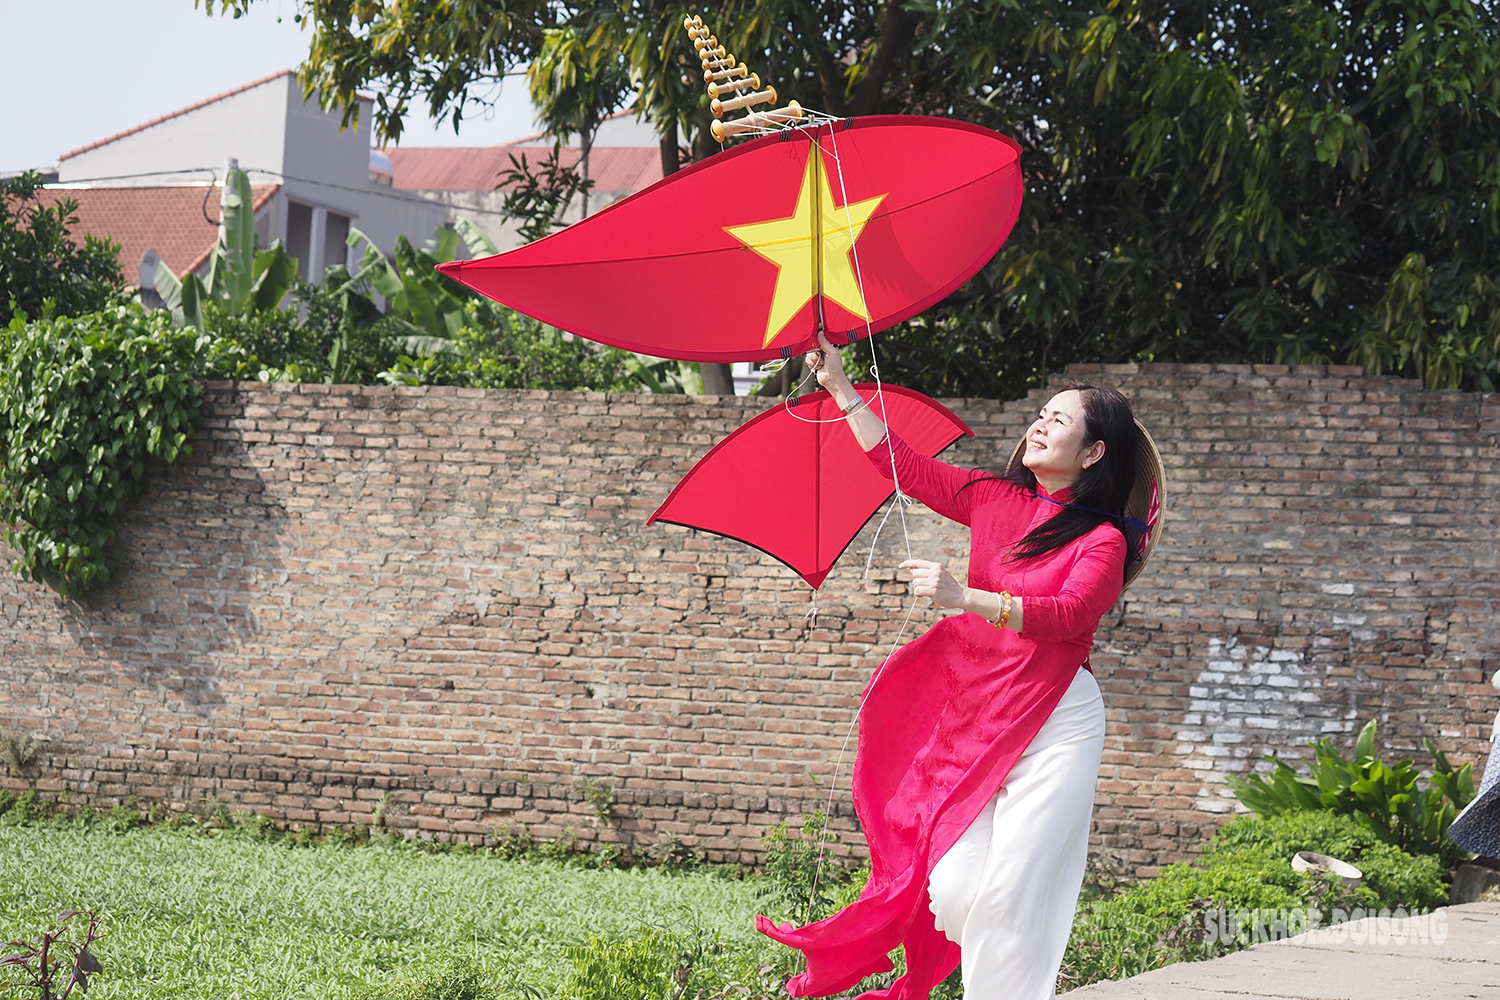 Khách nước ngoài thích thú với cánh diều chao lượn trên đồng quê Việt Nam - Ảnh 1.